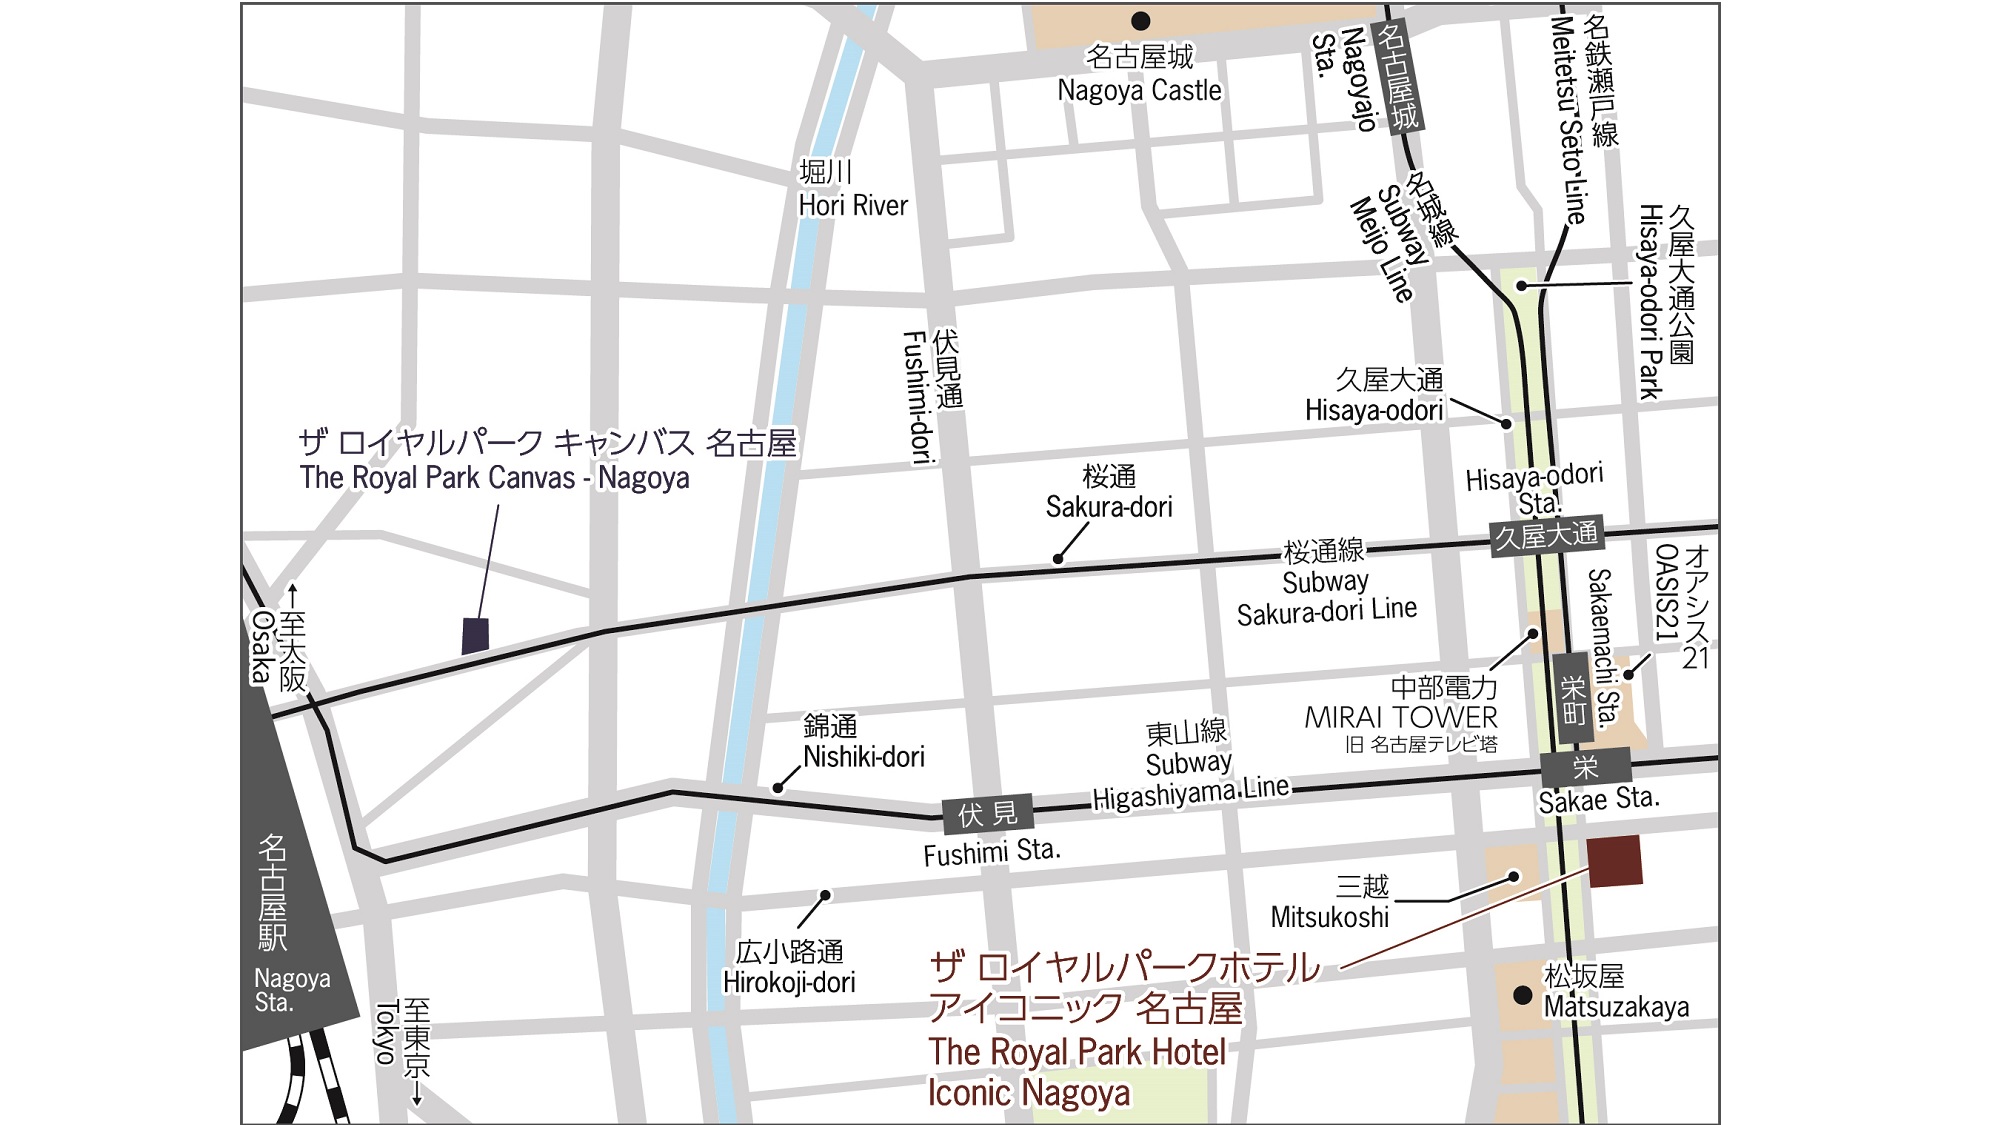 名古屋市営地下鉄「栄」駅に直結し、栄の地下街からもスムーズにアクセスいただける立地です。